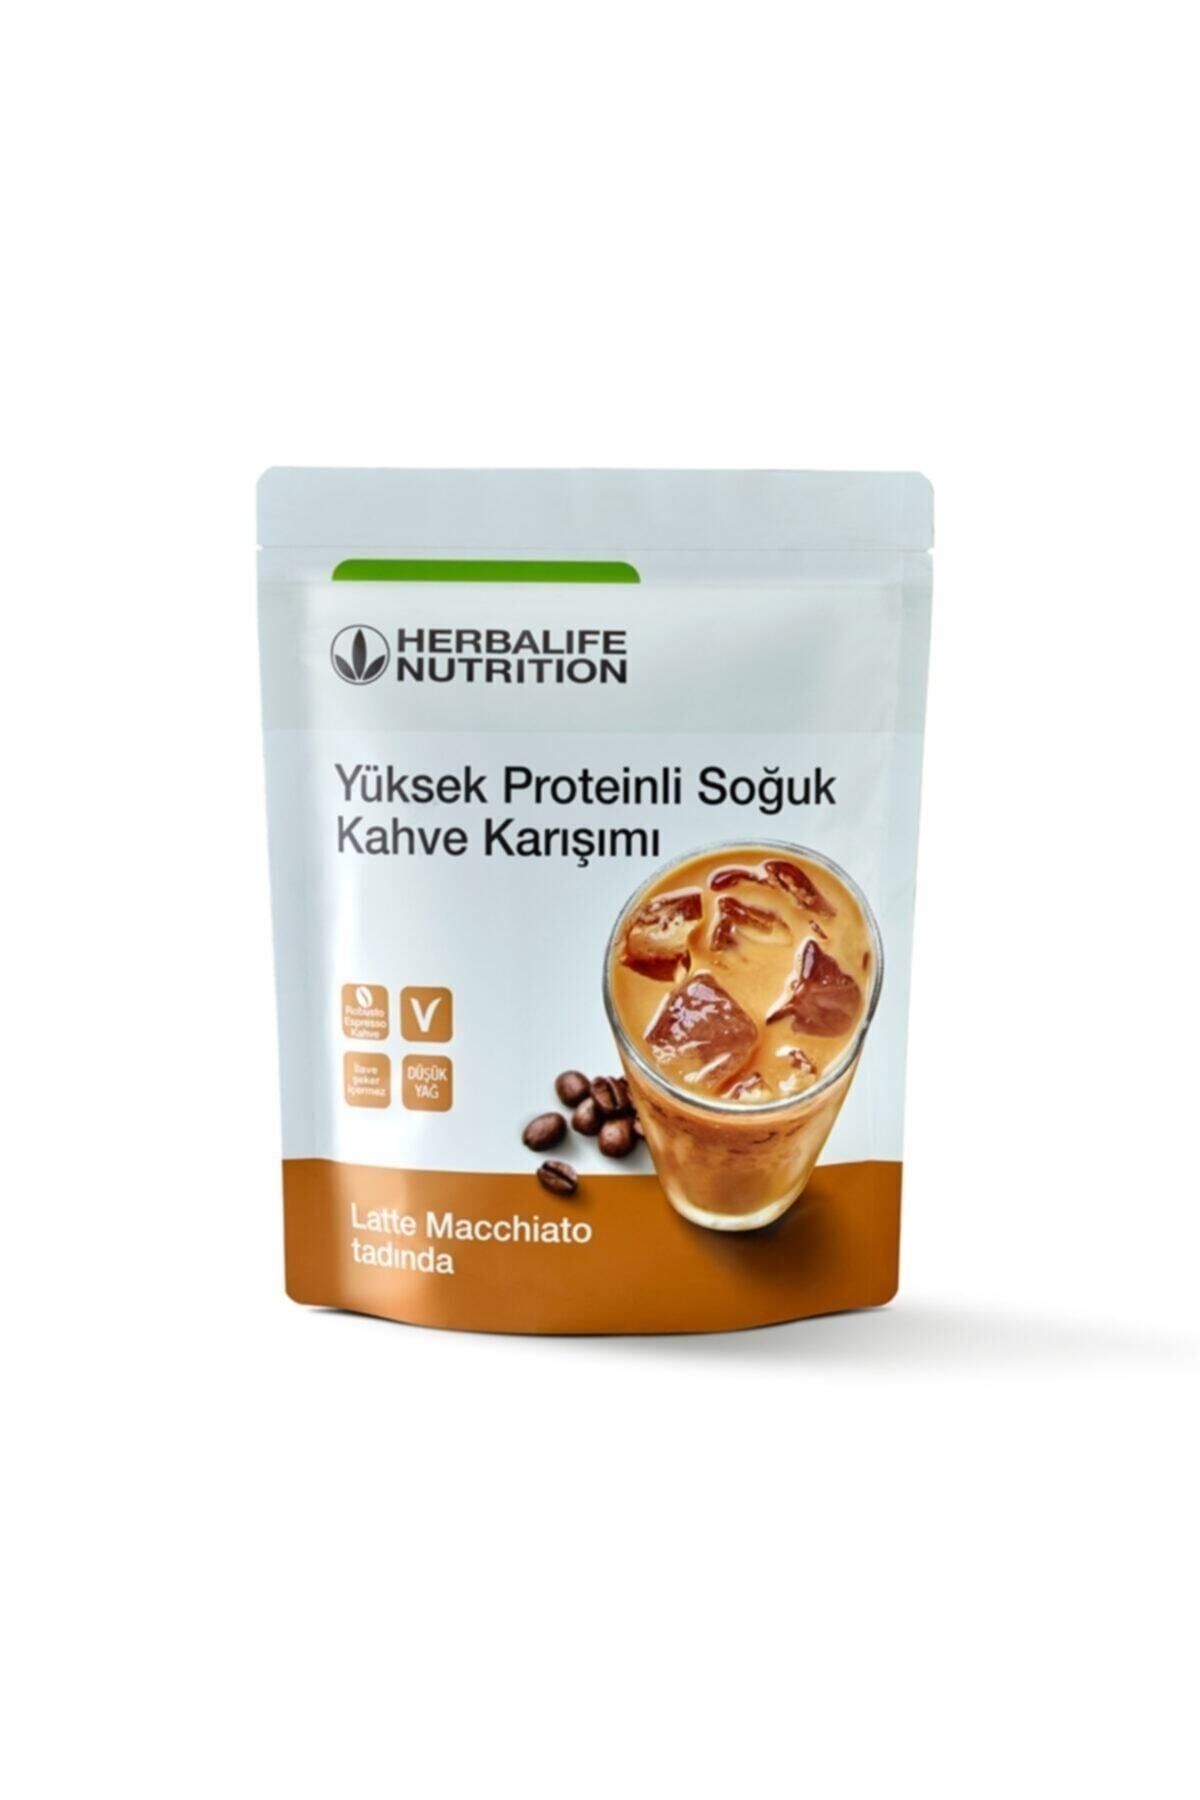 Herbalife Yüksek Proteinli Soğuk Kahve Karışımı Latte Macchiato